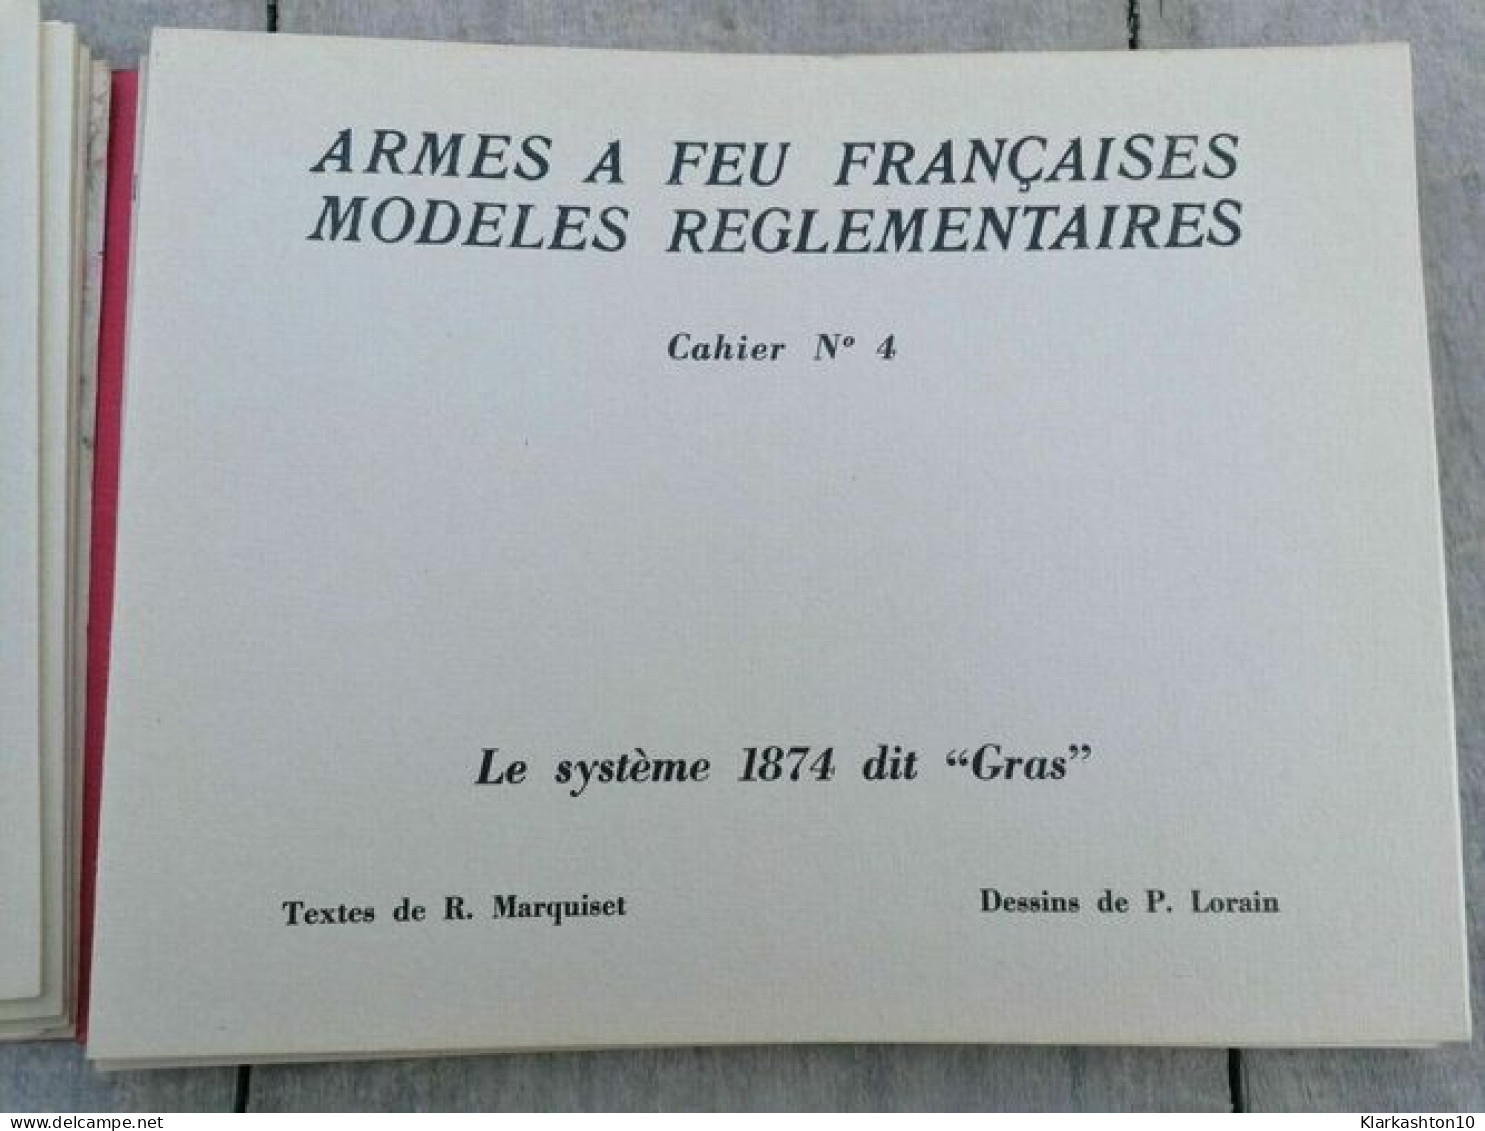 Armes à feu françaises modèles réglementaires 1858 1918 chargement culasse